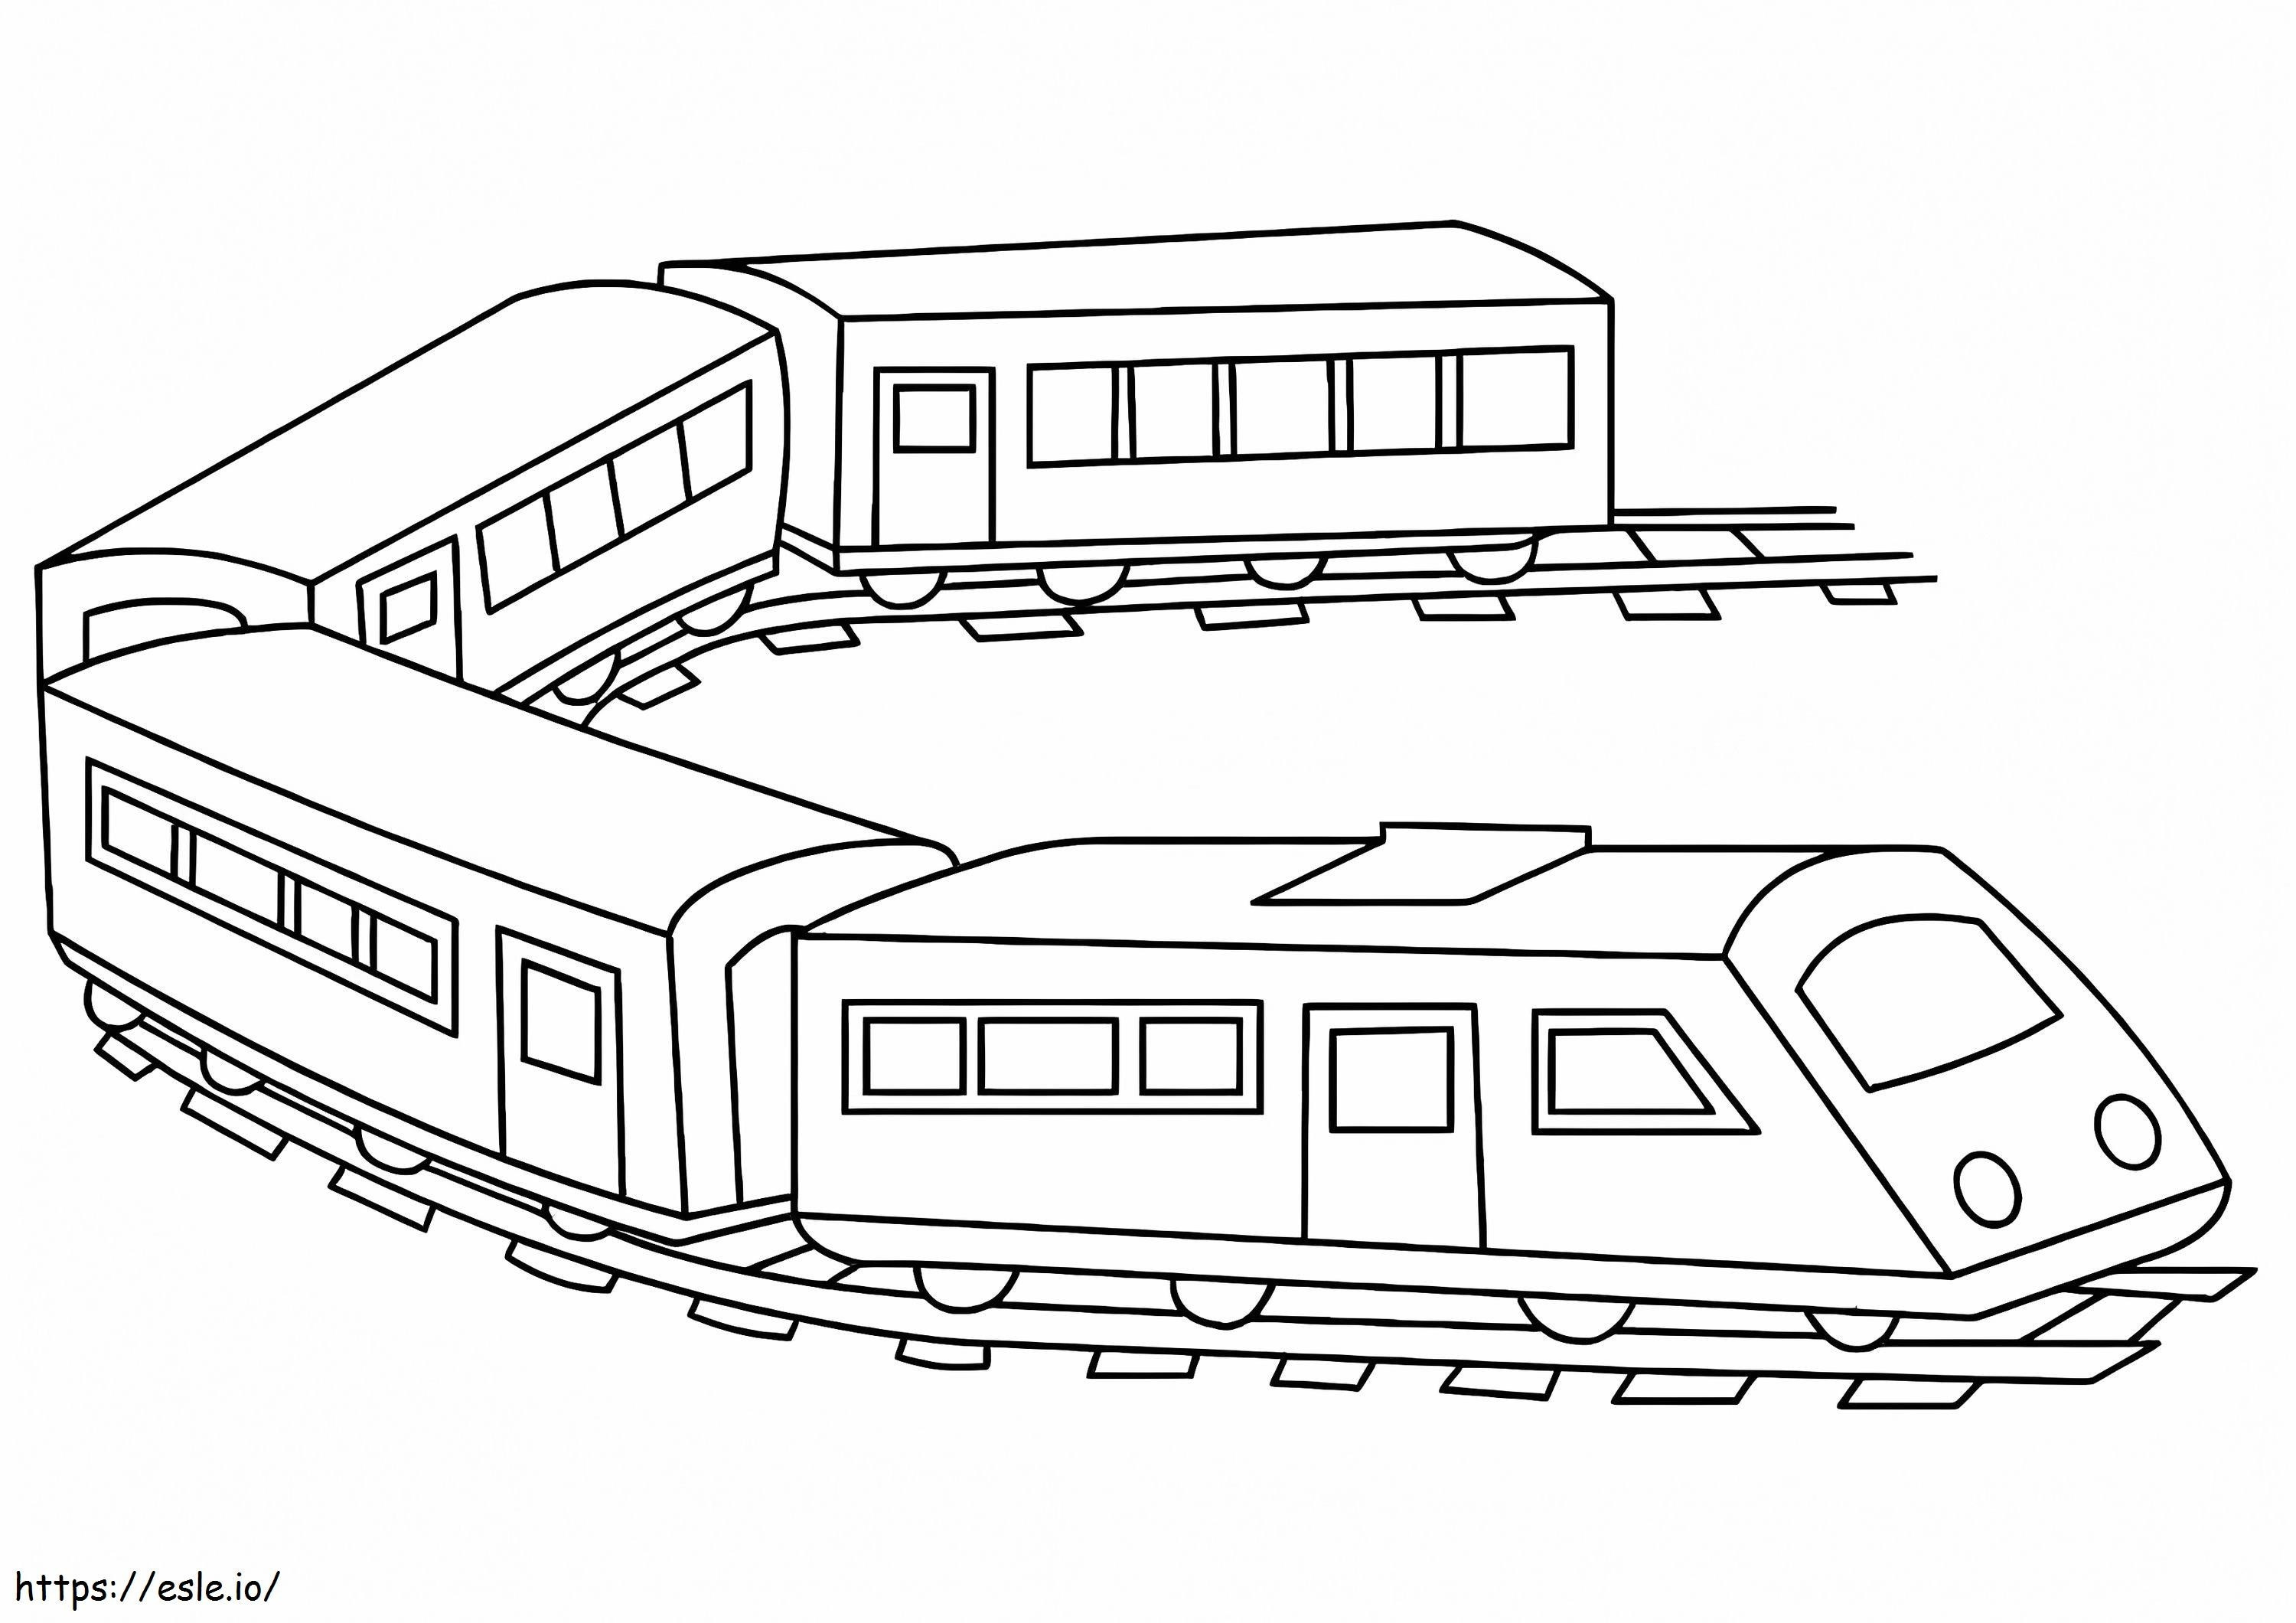 Treno passeggeri stampabile da colorare